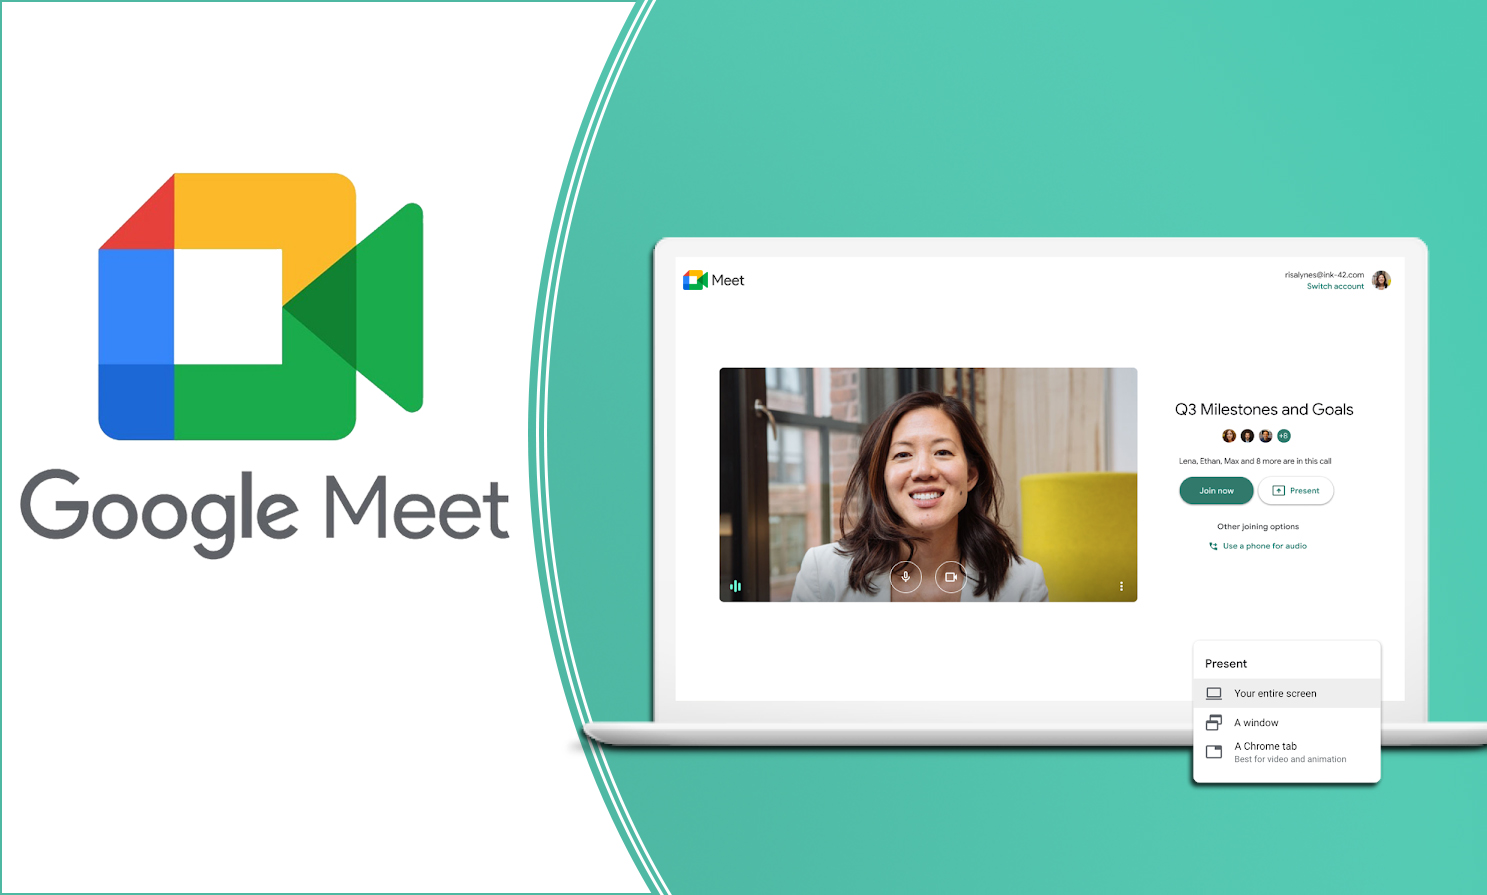 Ứng dụng Google Meet cho họp trực tuyến và hội nghị truyền hình trực tuyến